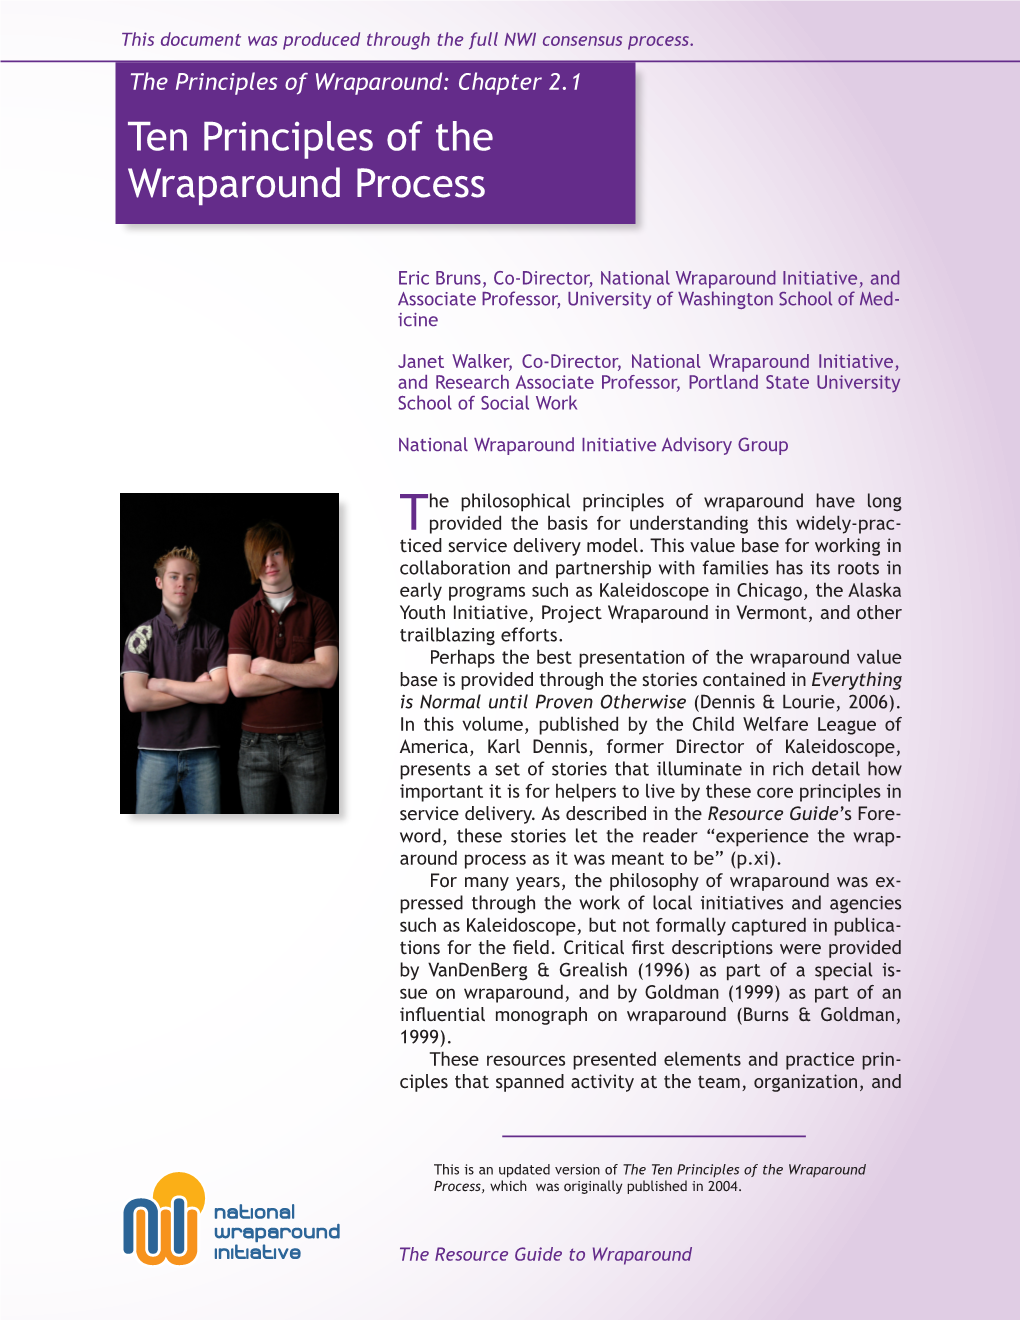 Ten Principles of the Wraparound Process